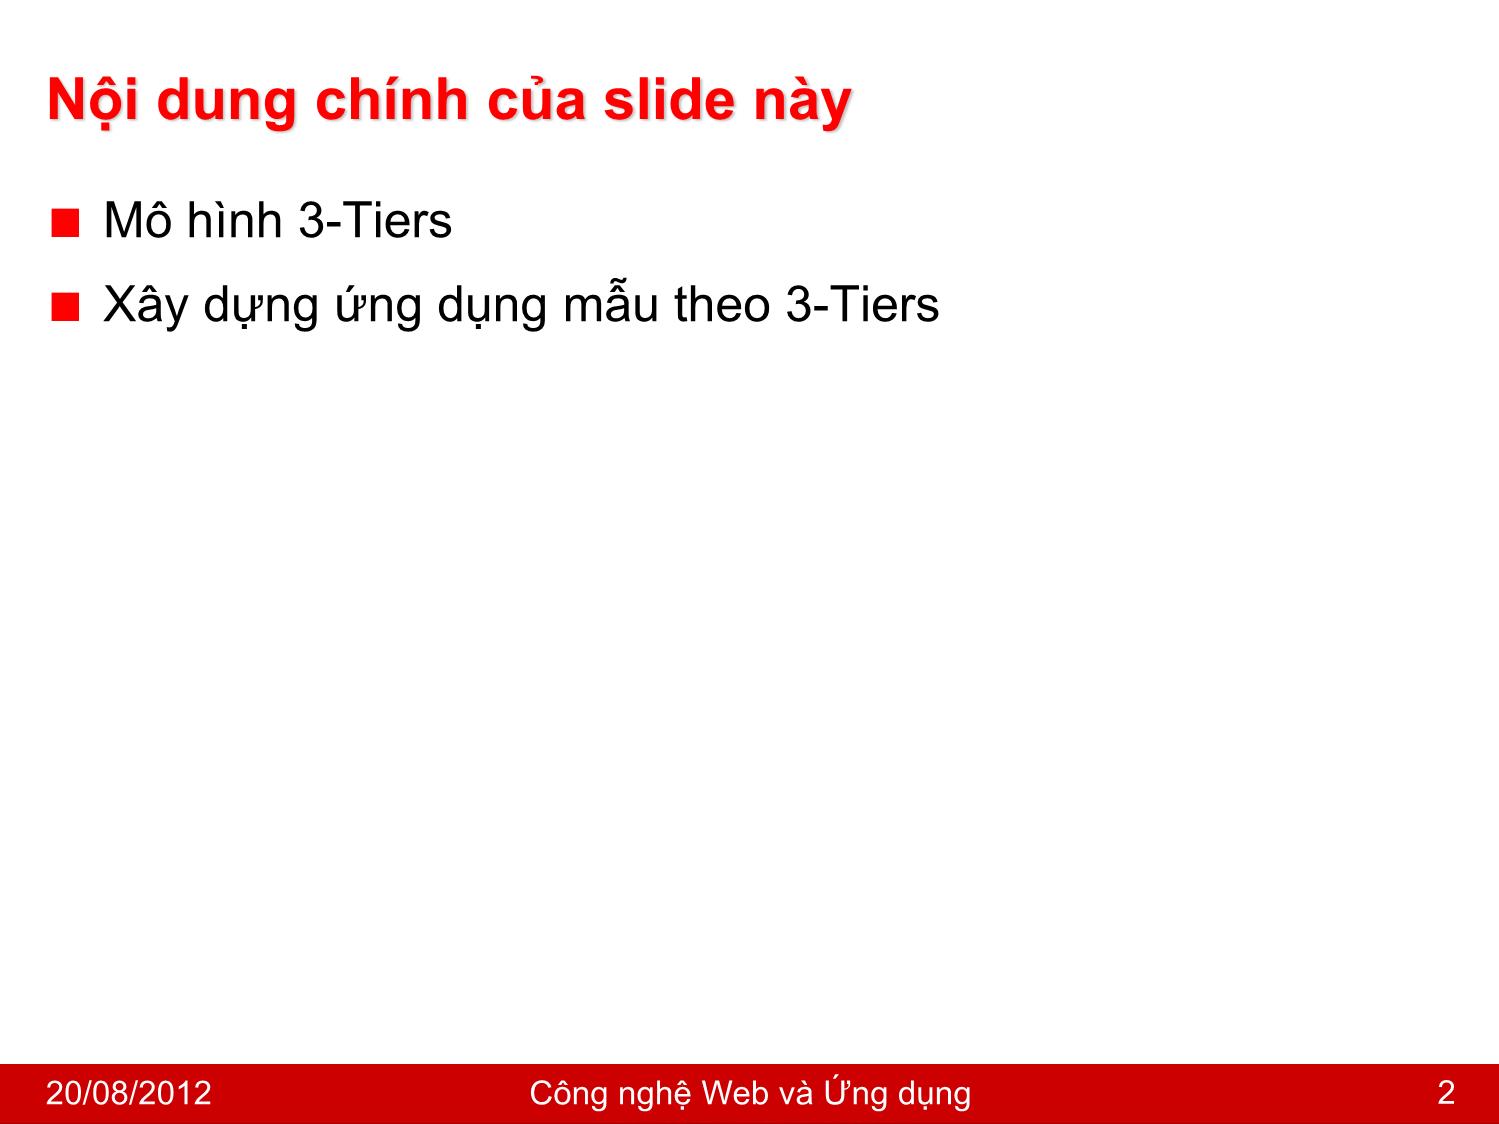 Bài giảng Công nghệ Web và ứng dụng - Bài 3: Xây dựng ứng dụng PHP theo mô hình 3-Tiers - Nguyễn Hoàng Tùng trang 2